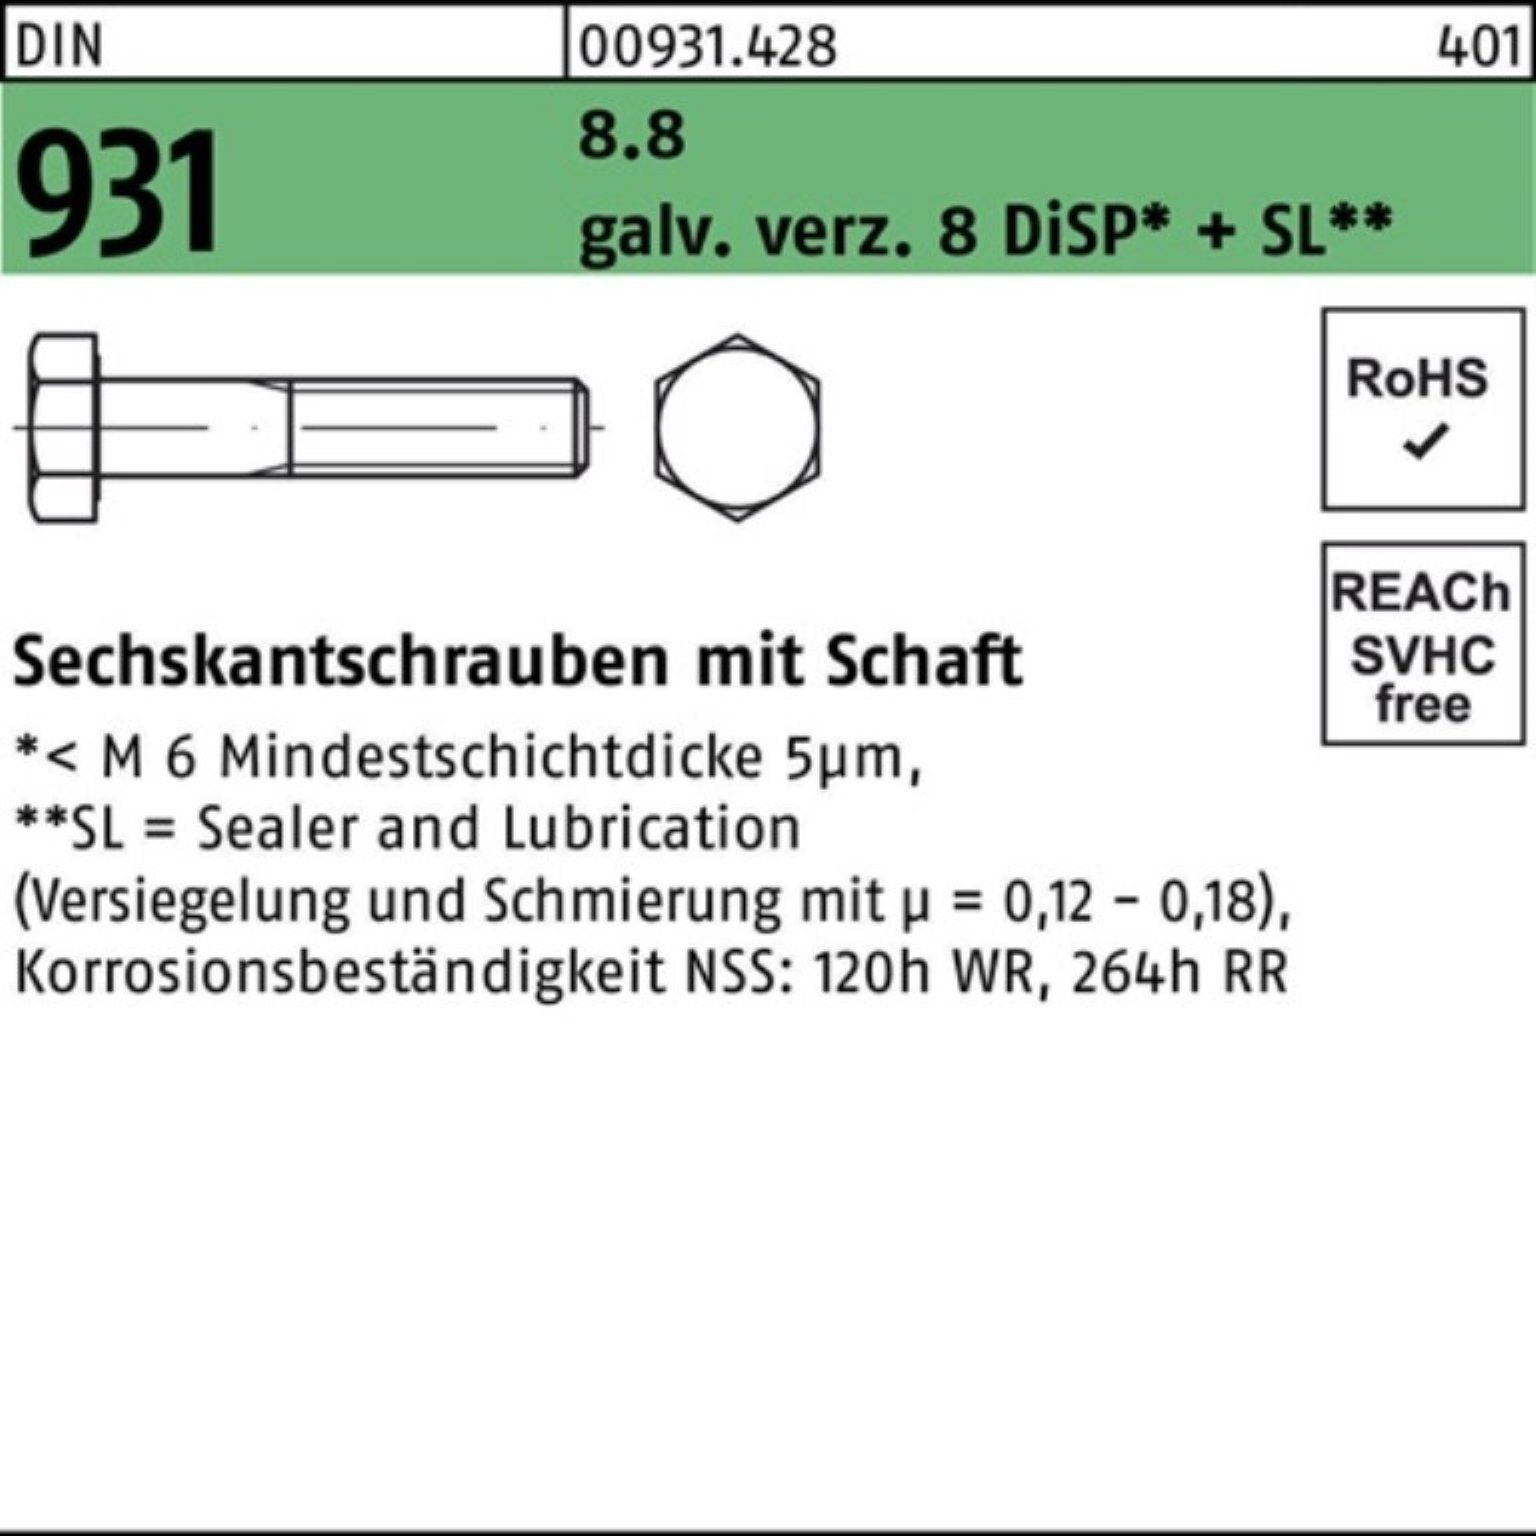 Schaft 70 8 DiSP Sechskantschraube Reyher DIN Pack Zn 200er Sechskantschraube M6x 8.8 gal + 931